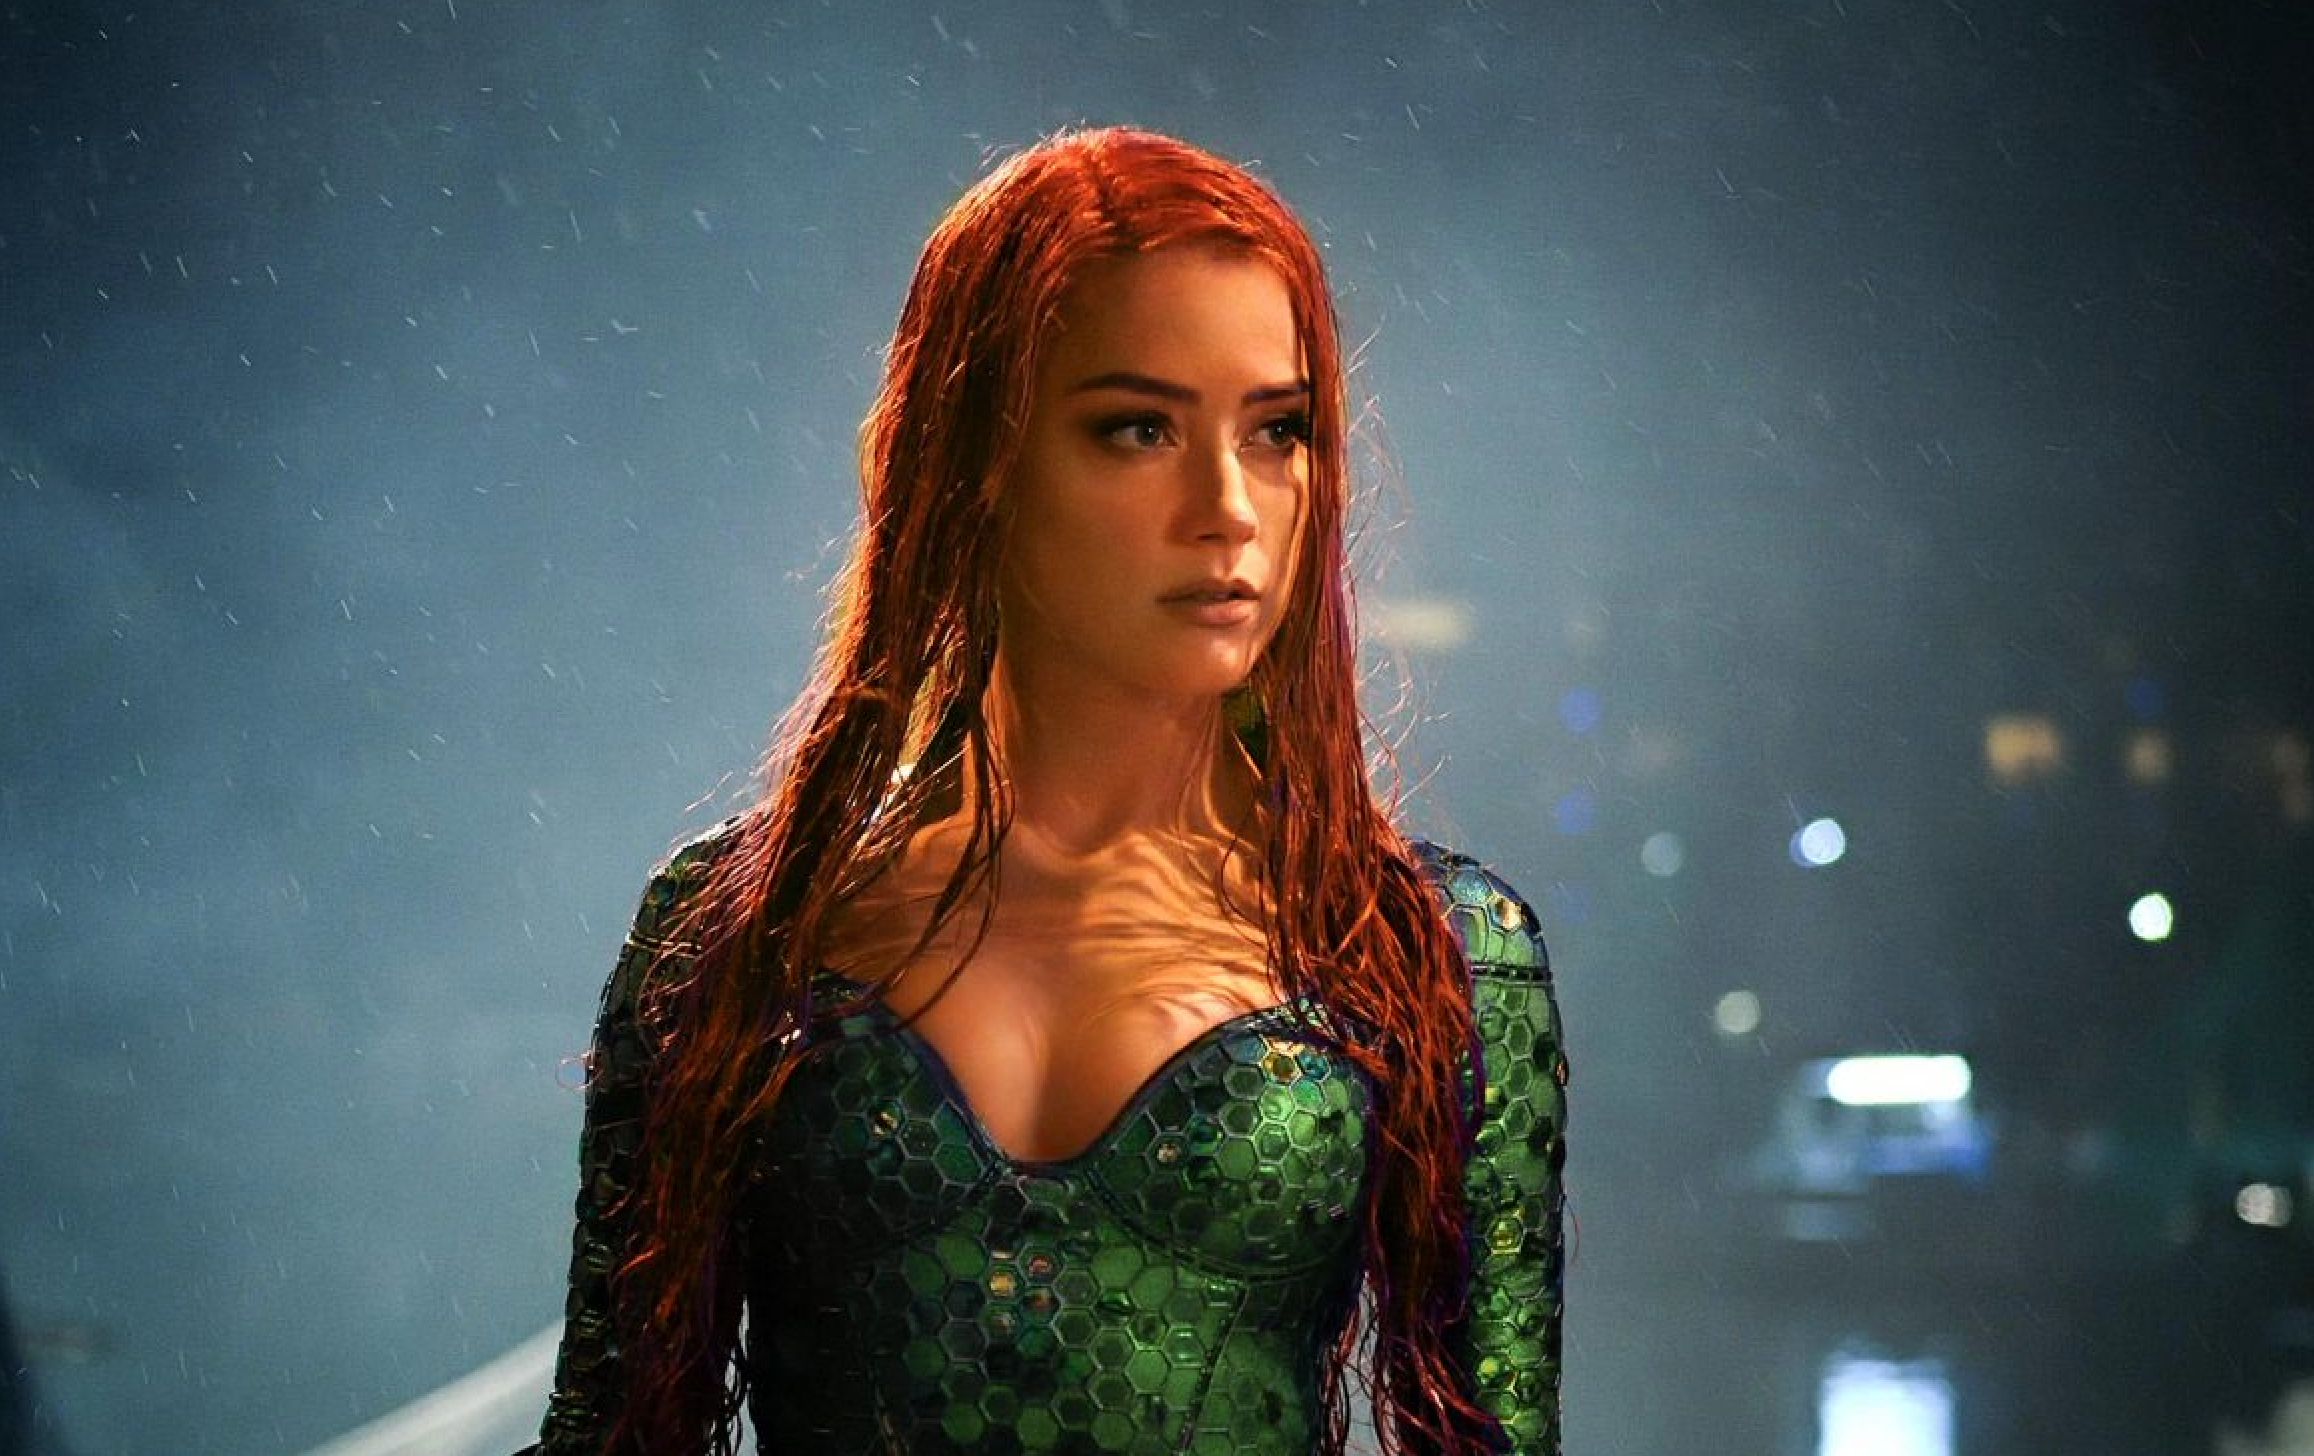 Amid boycott trend, Amber Heard got role in Aquaman 2